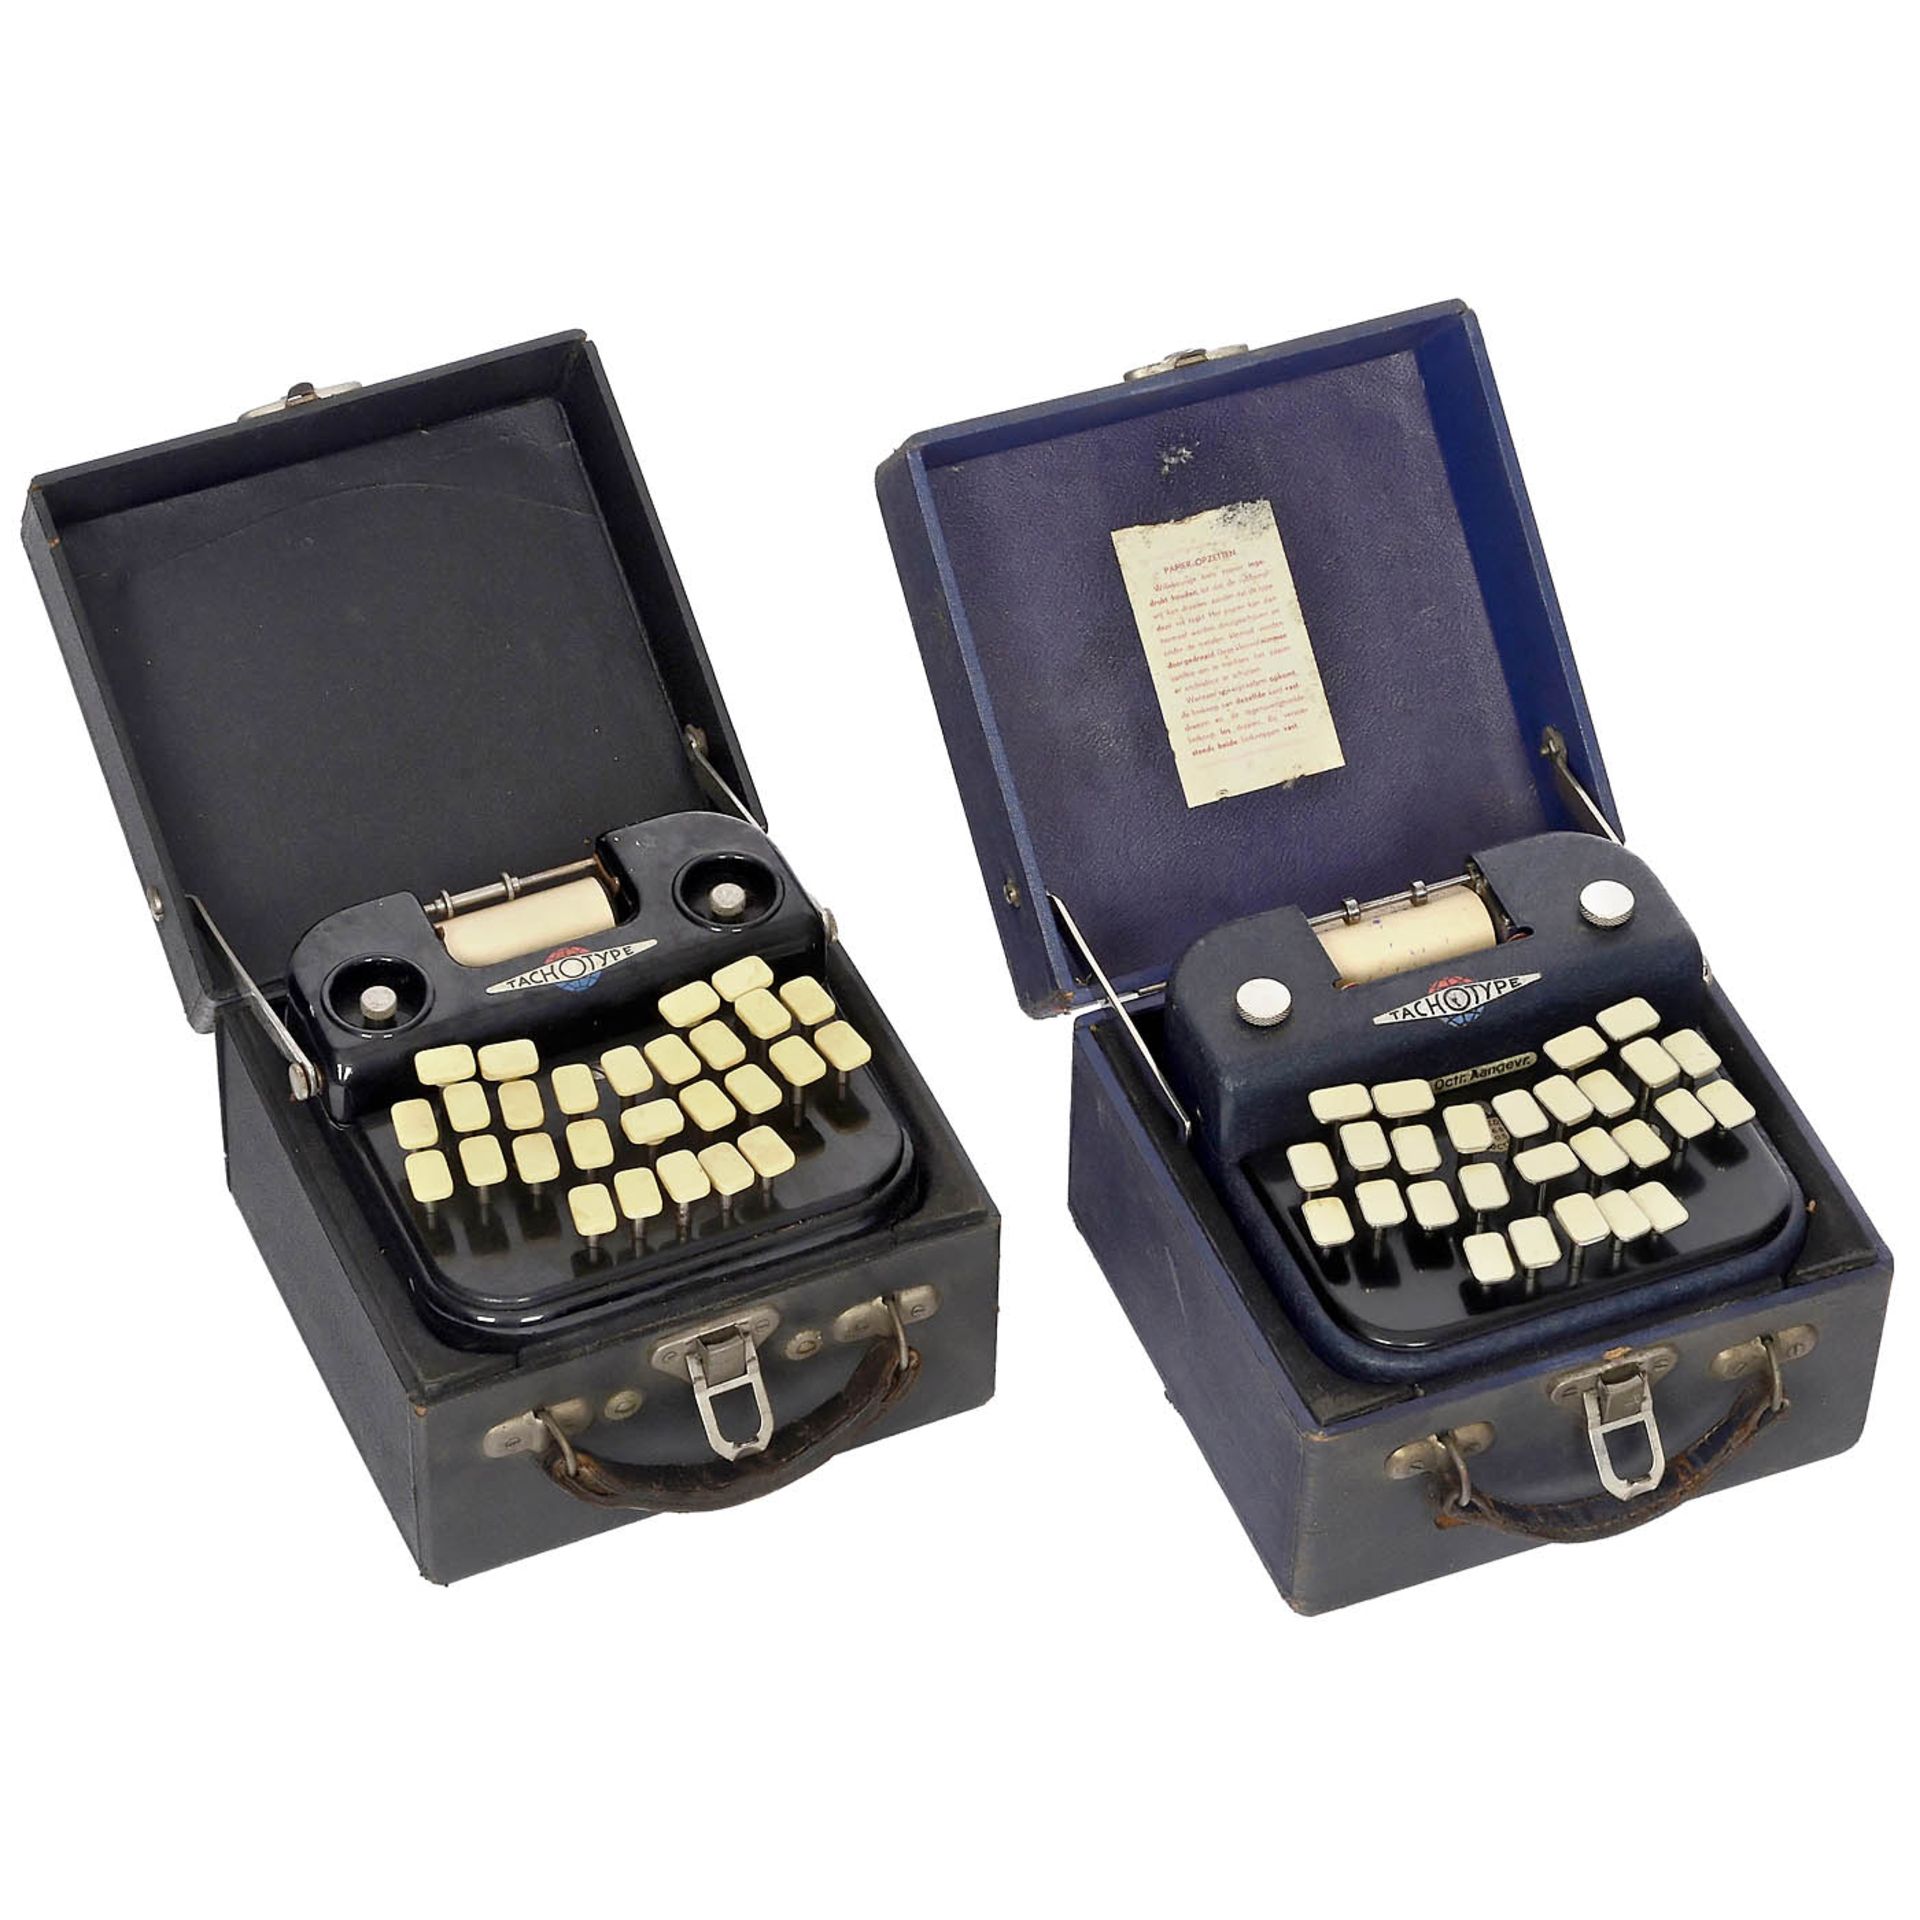 2 Tachotype Dutch Shorthand Typewriters, c. 1940